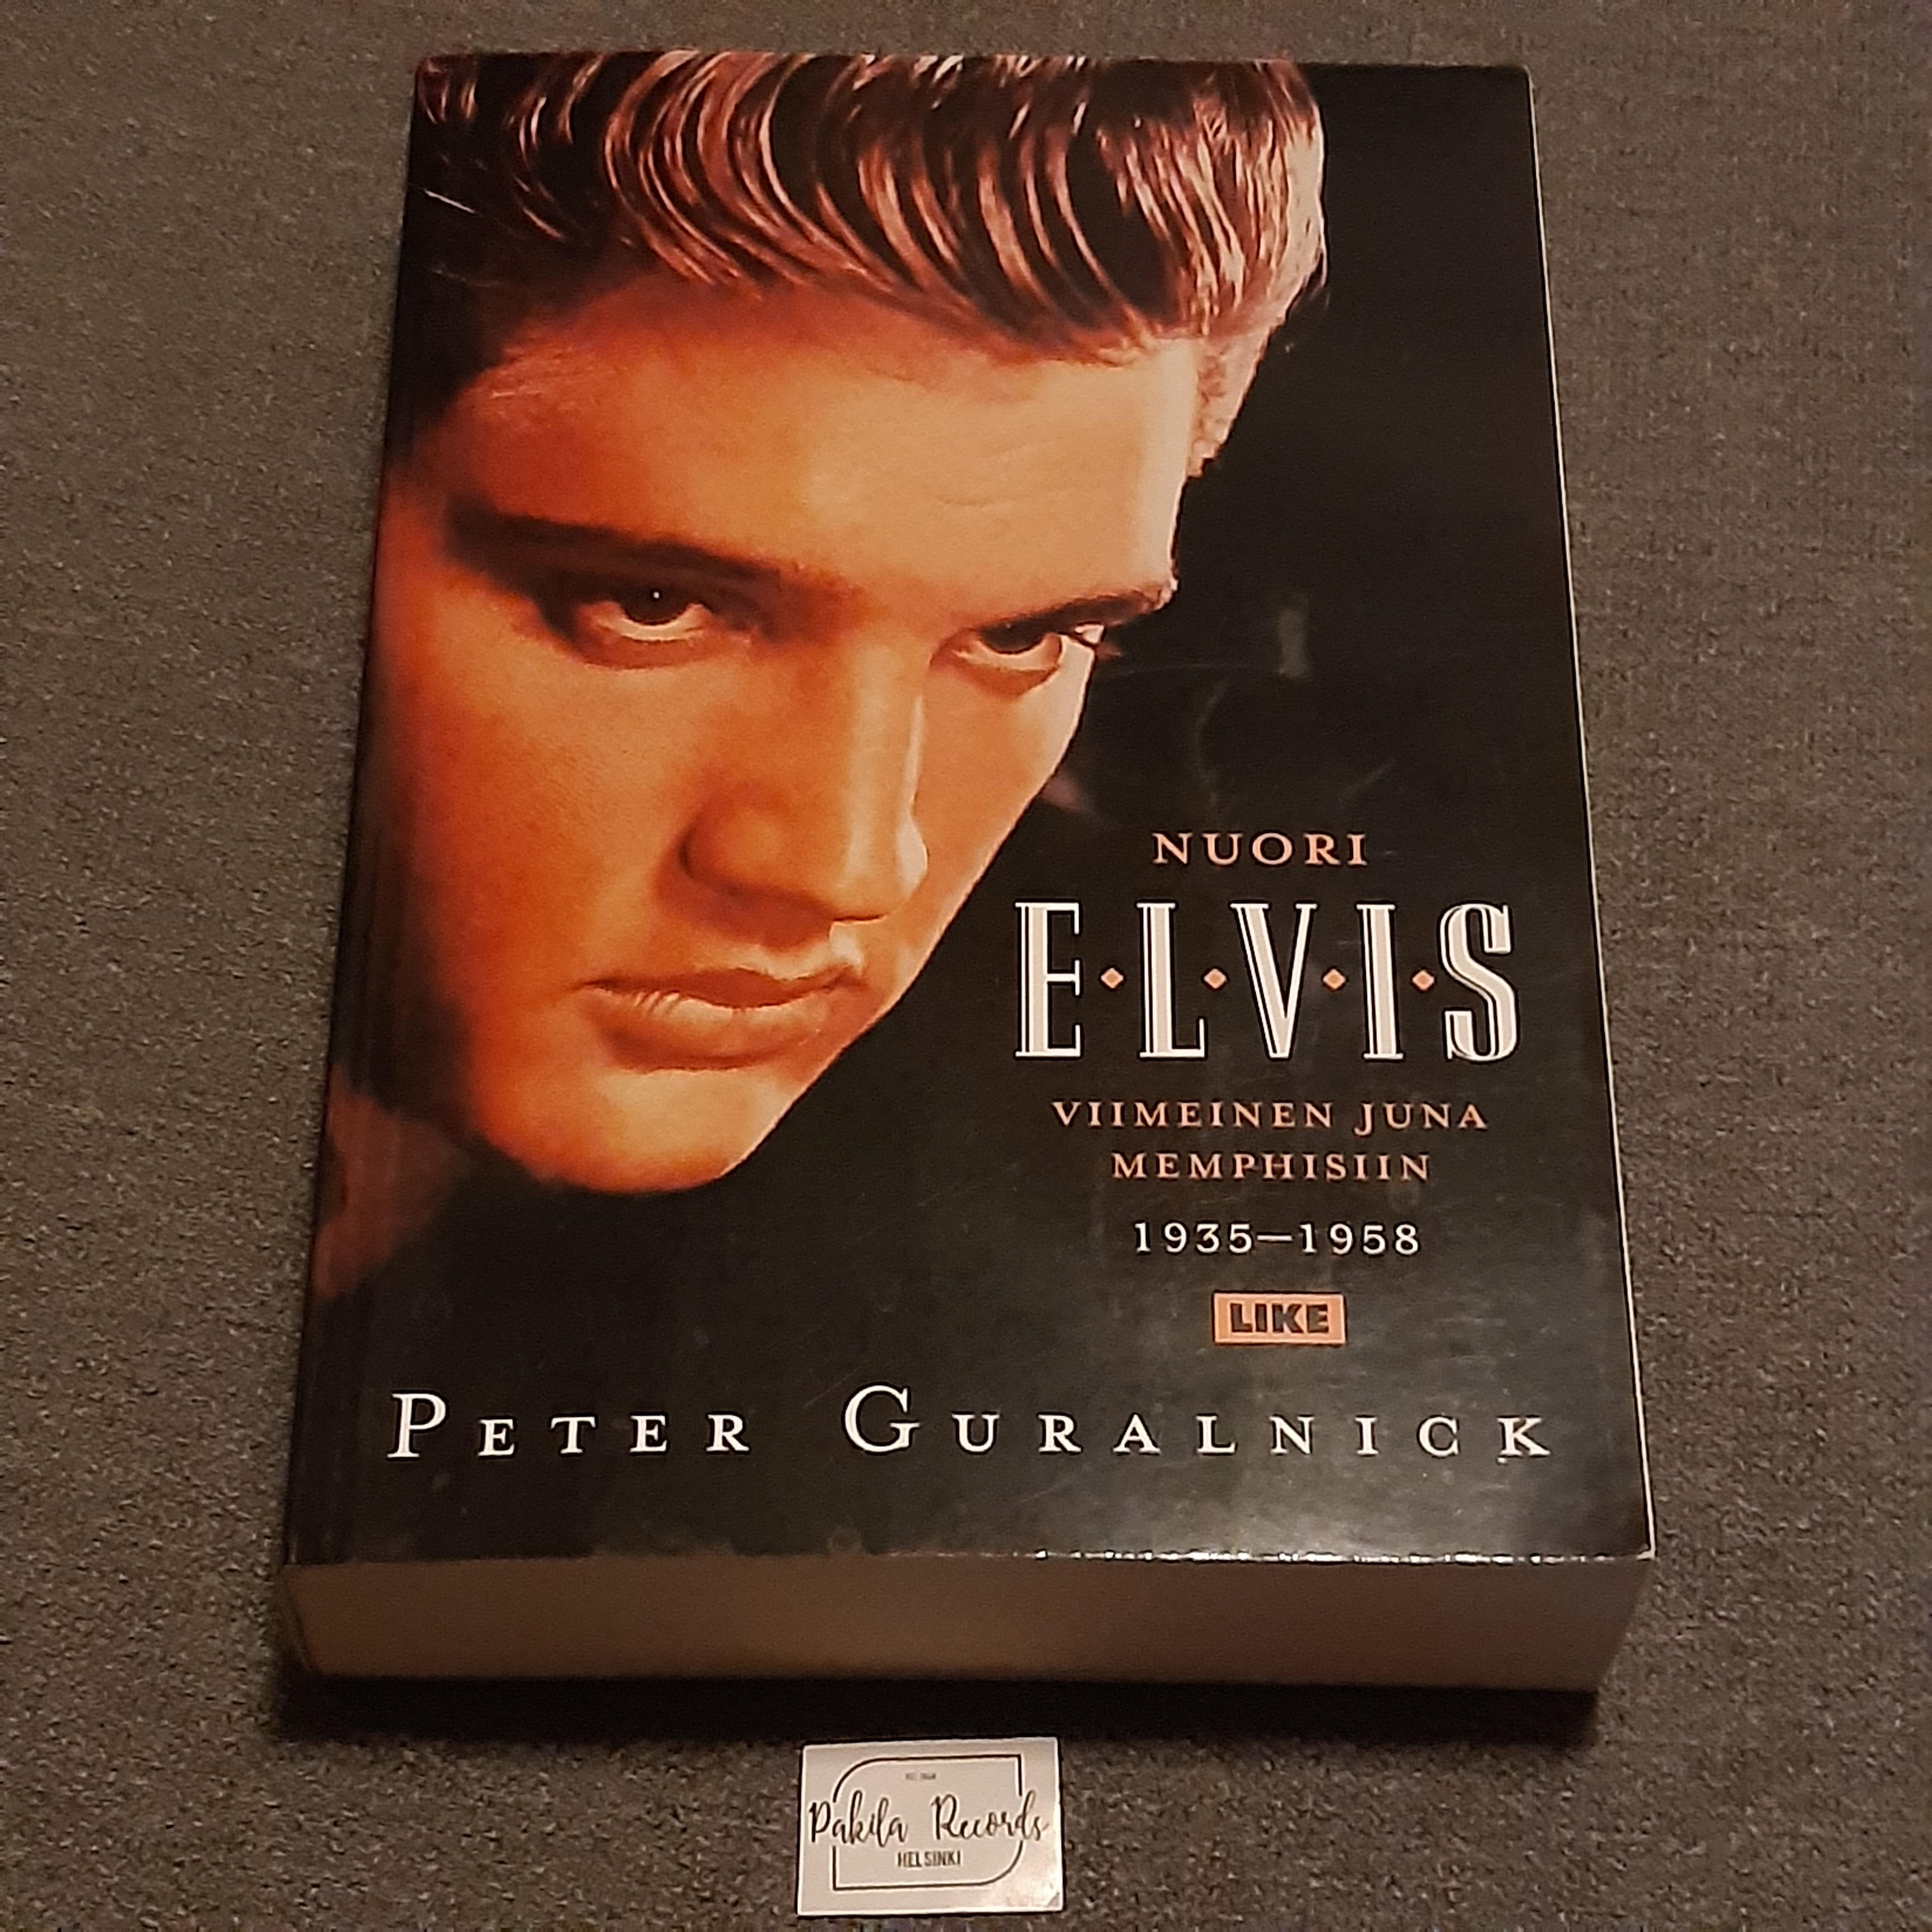 Nuori Elvis, Viimeinen juna Memphisiin 1935-1958 - Peter Guralnick - Kirja (käytetty)